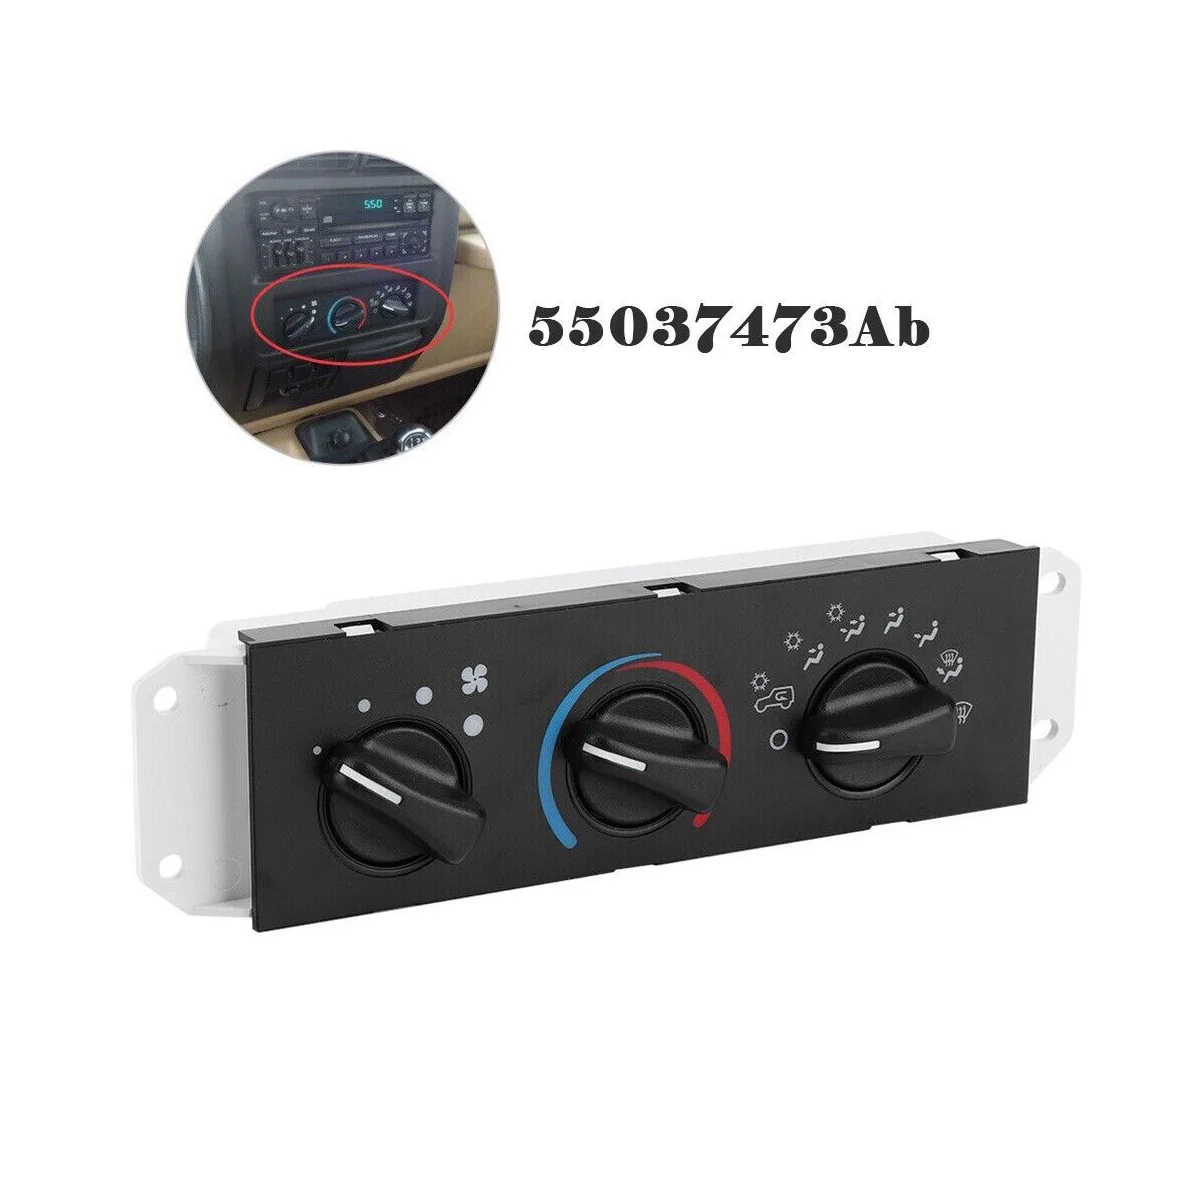 Carro de Calor do Aquecedor Ventilador Clima Interruptor de Controle com CA para Wrangler 1999-2004 55037473AB